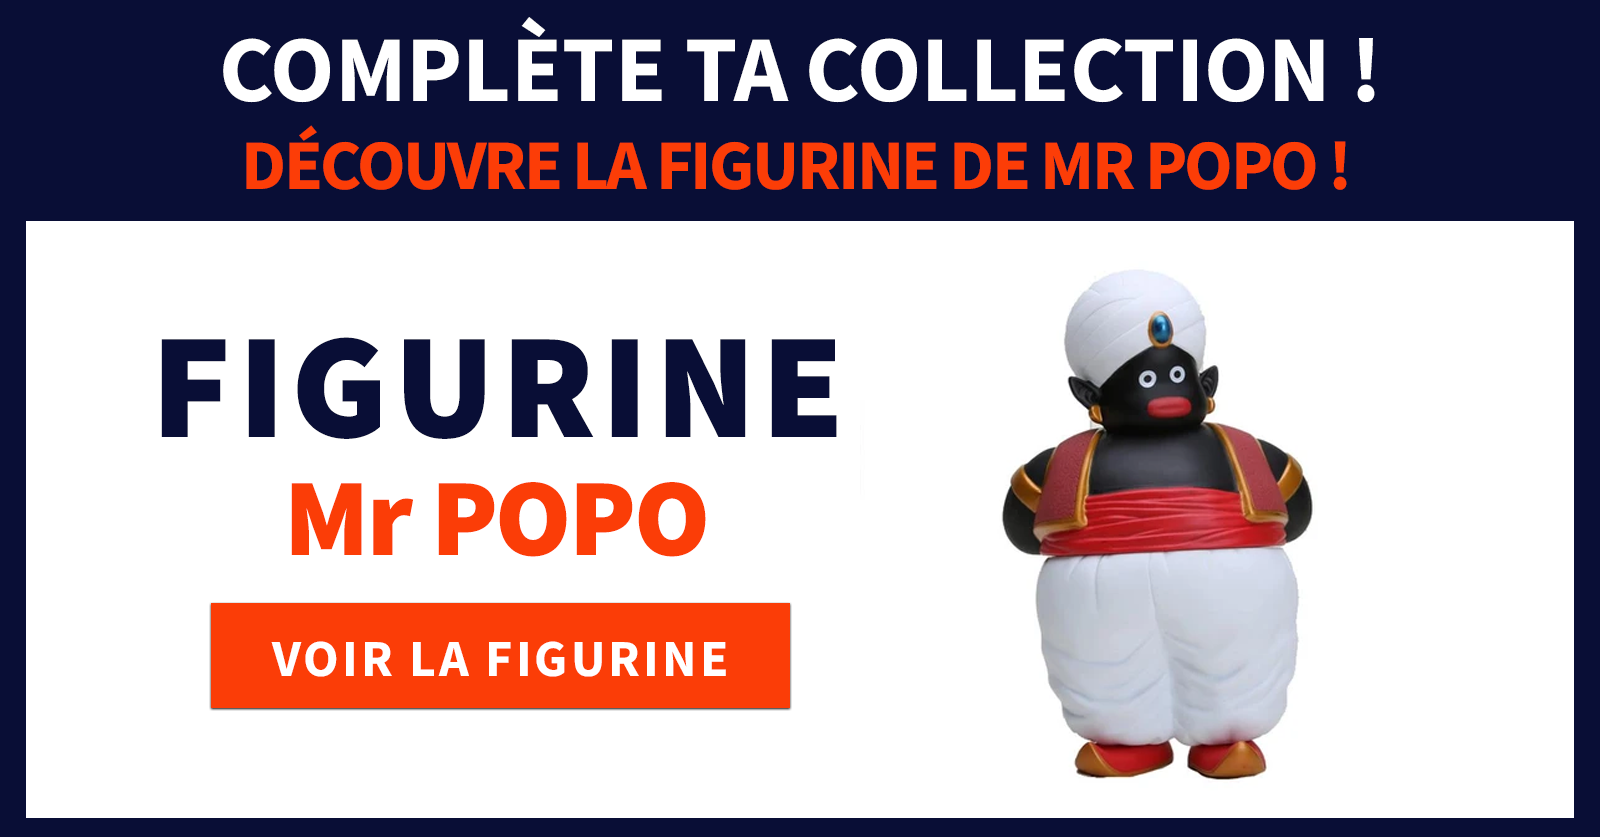 Mr Popo figurine